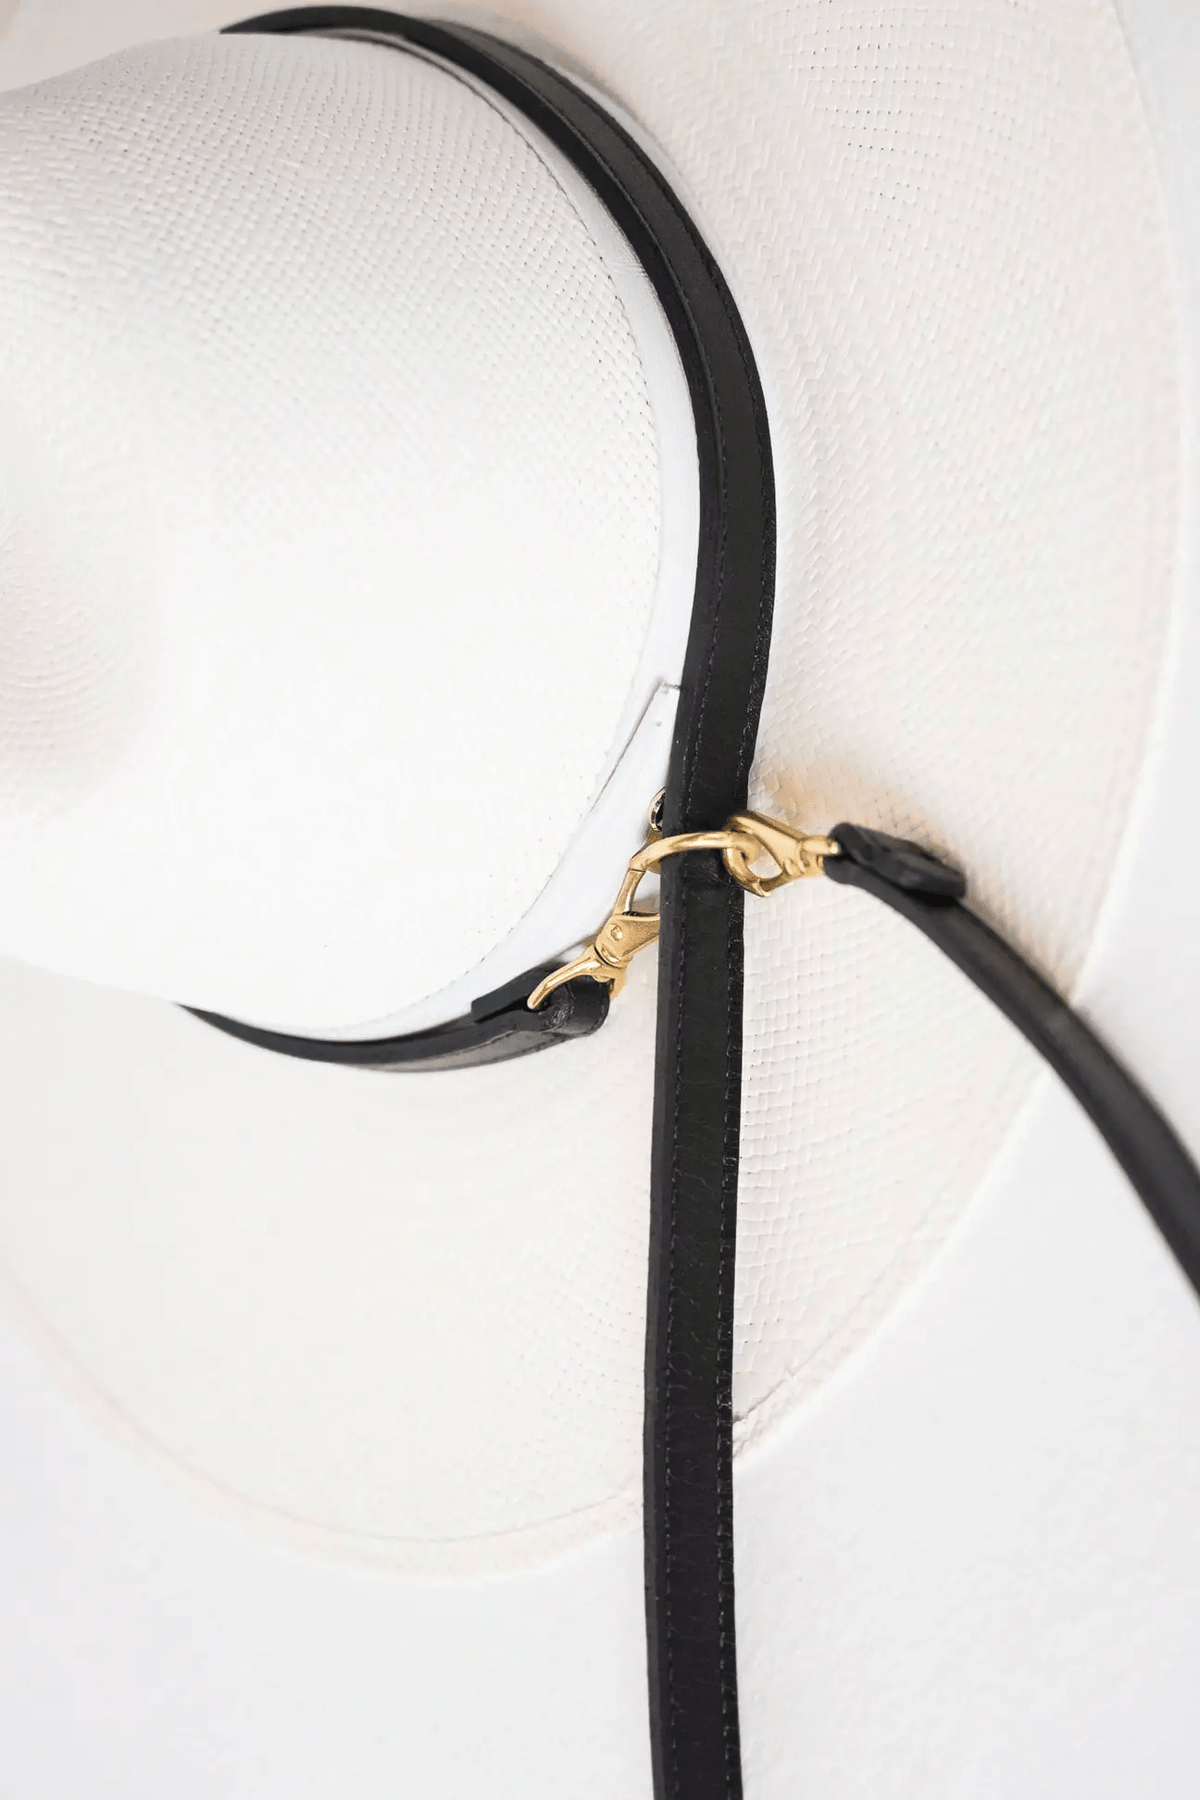 Janessa Leoné Hat carrier